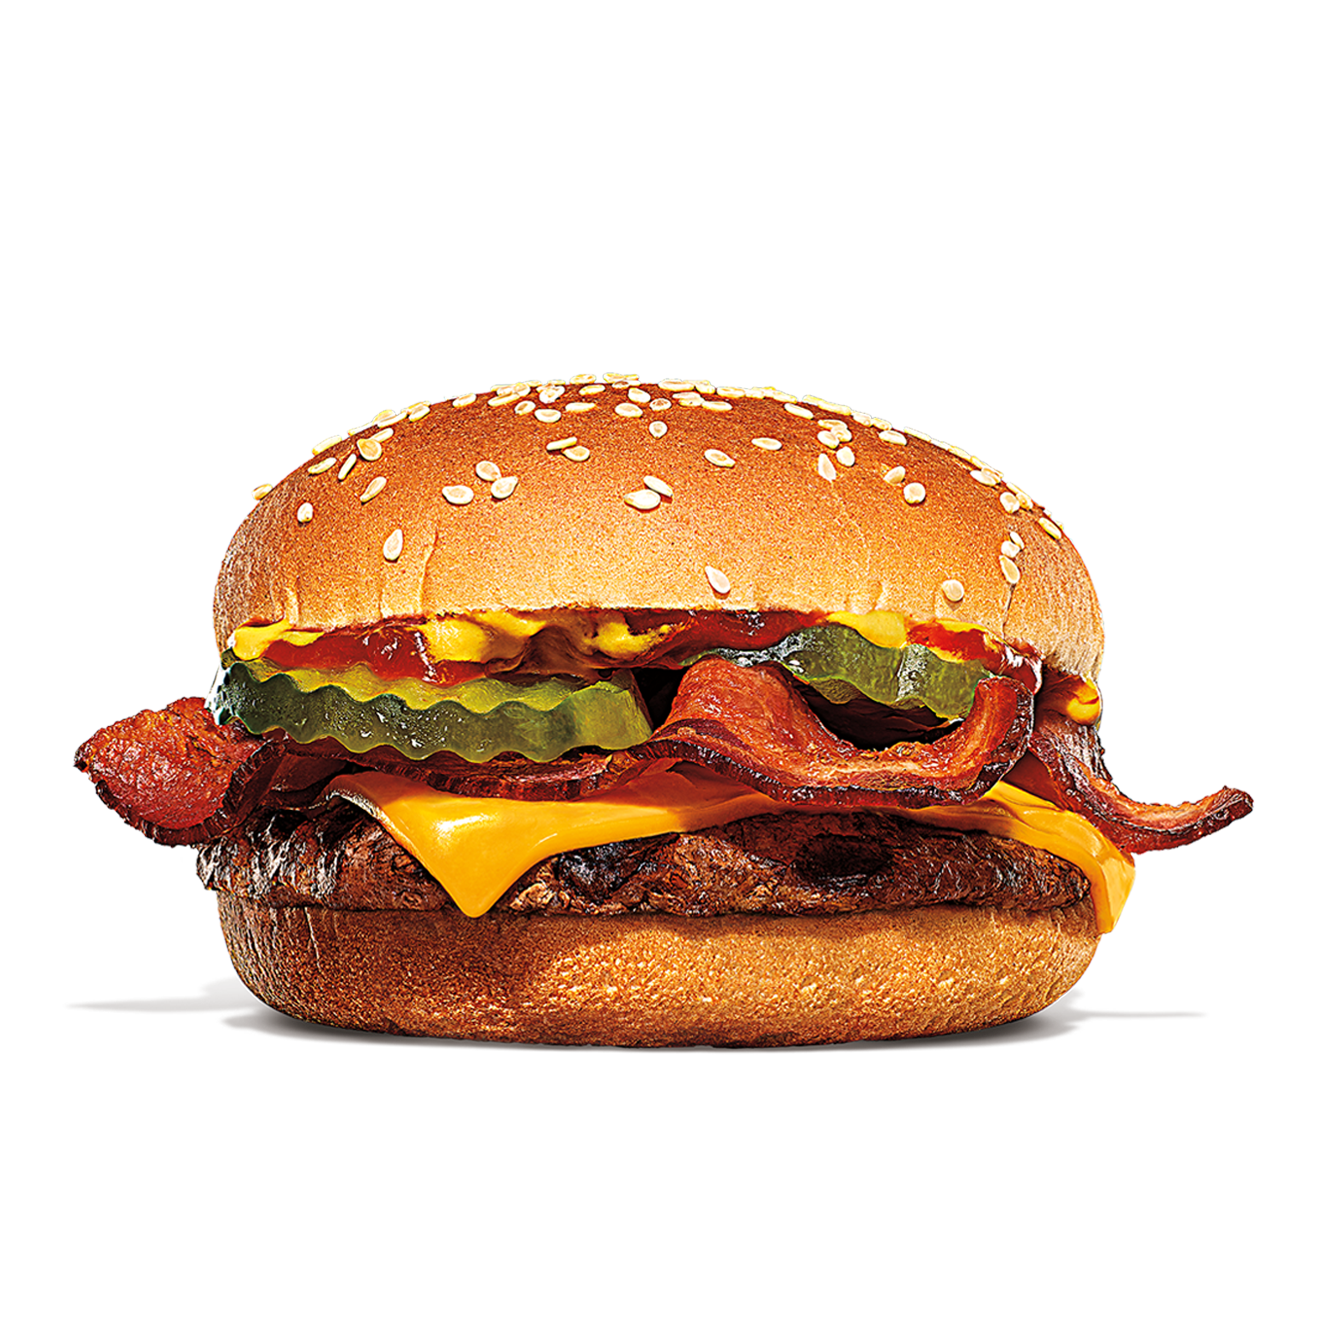 Burger King Dallas (214)320-3031